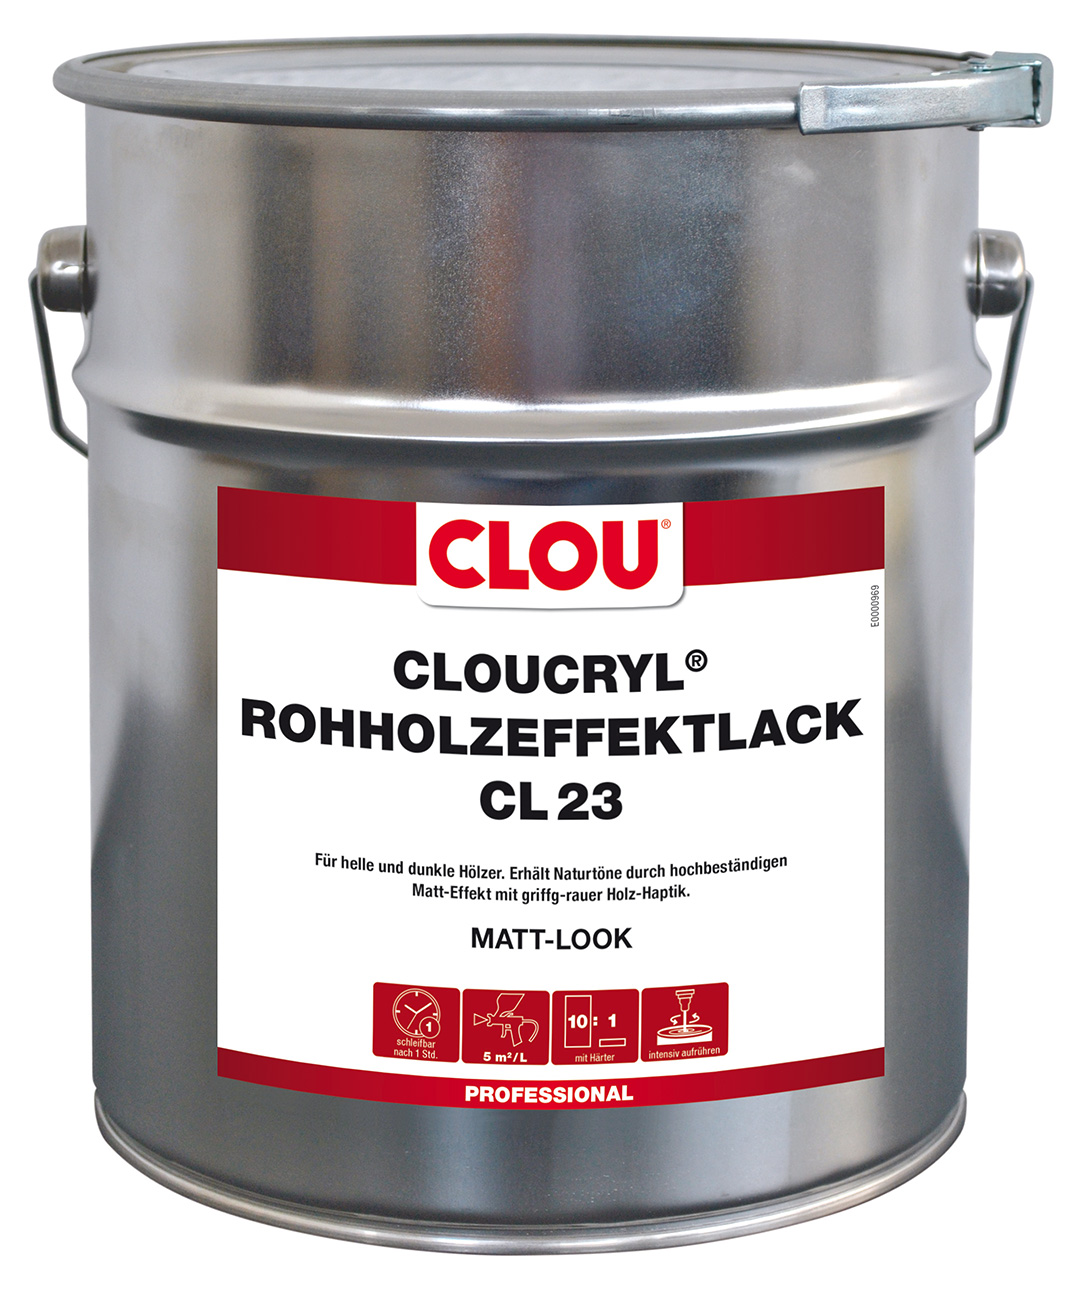 CLOUCRYL Rohholzeffektlack CL23 MATT-LOOK